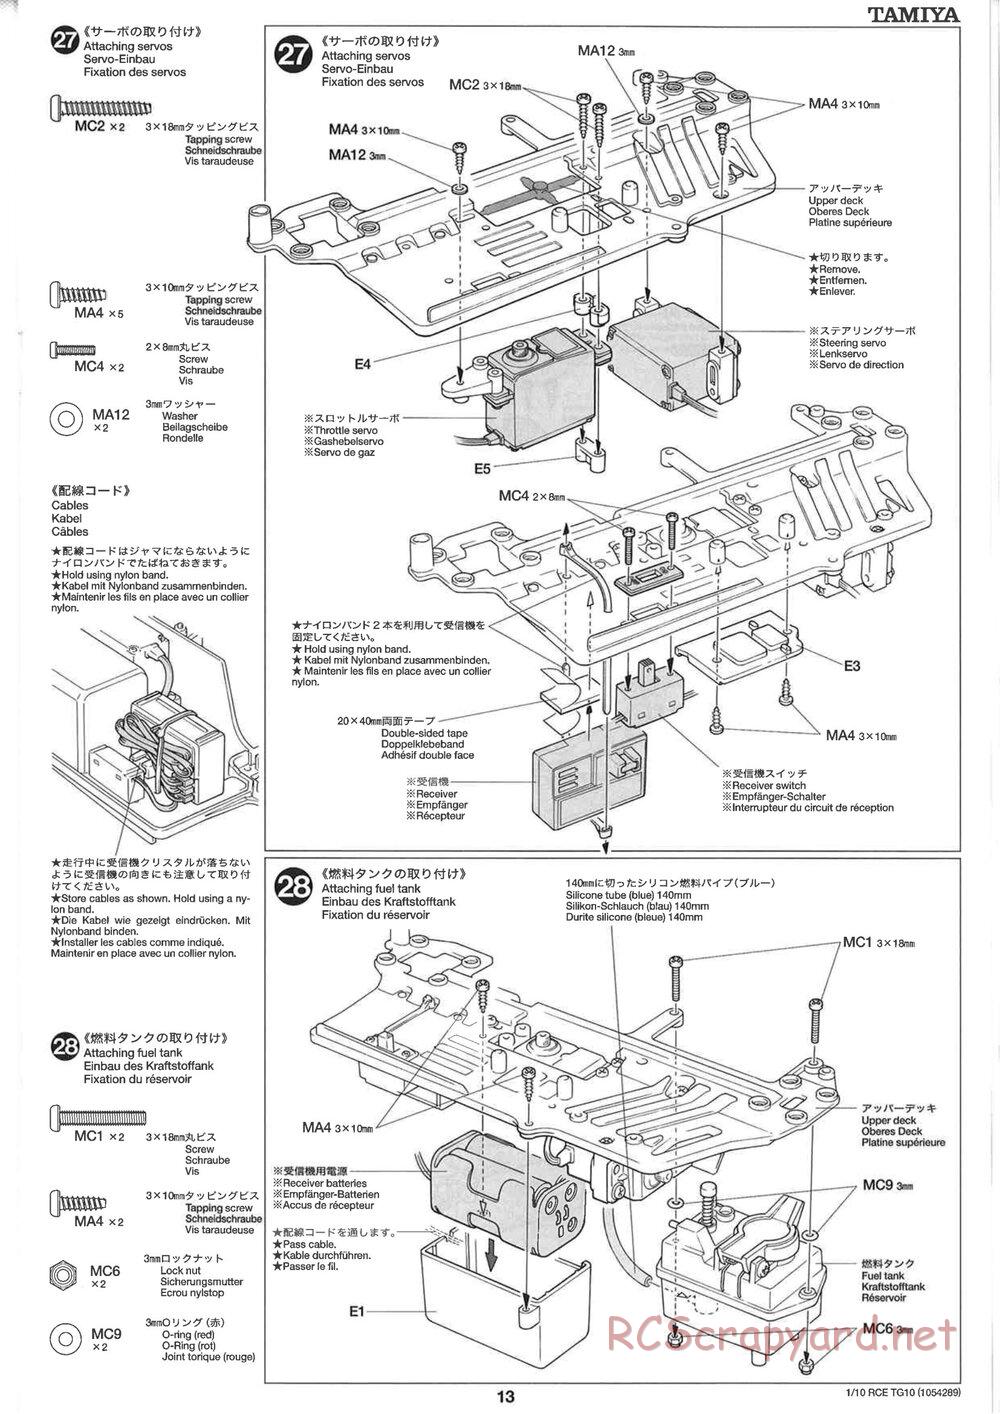 Tamiya - TG10 Mk.1 Chassis - Manual - Page 13